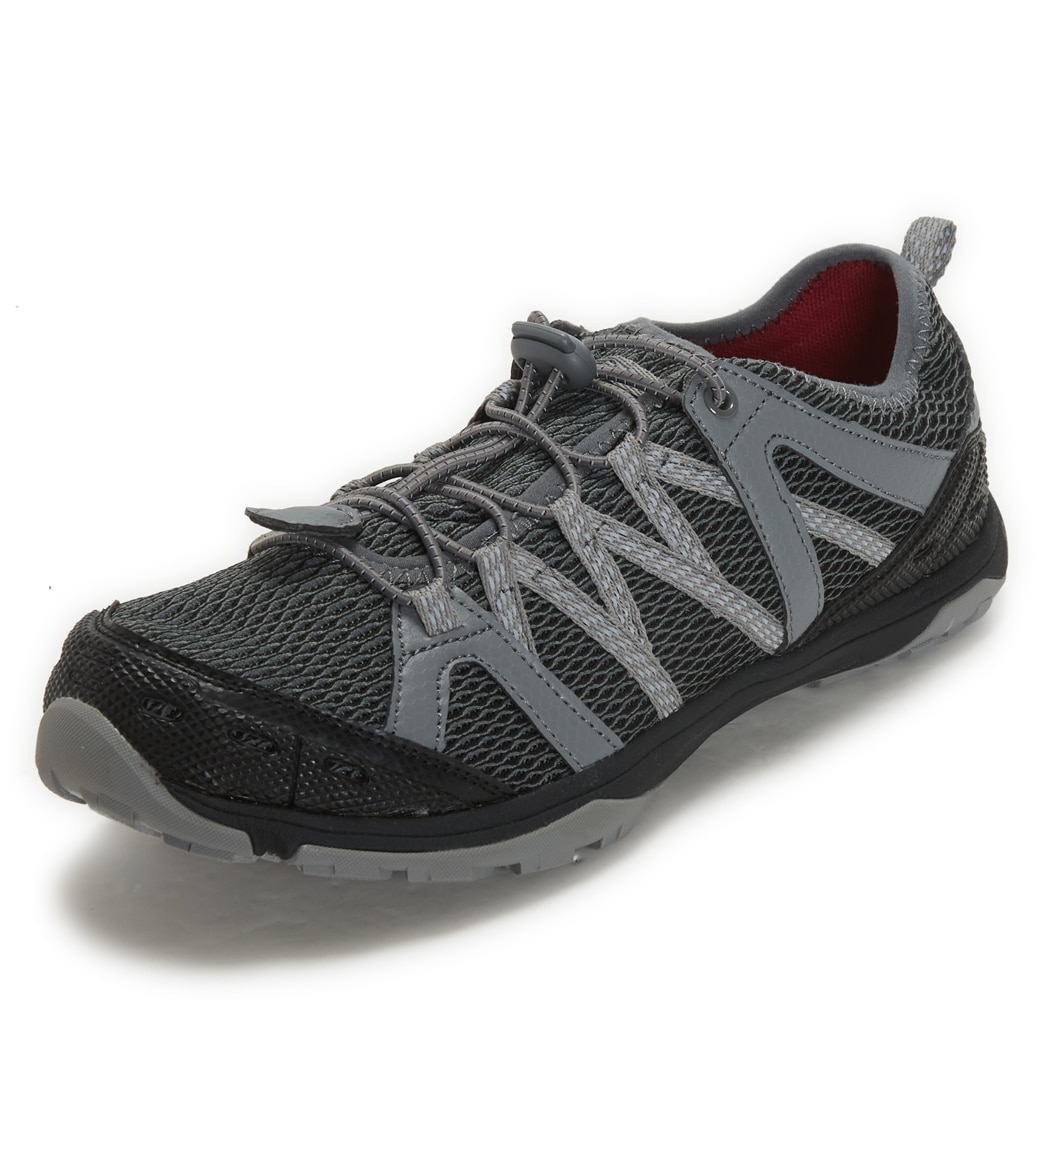 Northside Men's Cedar Rapids Waterproof Shoes - Dark Gray/Red 080 - Swimoutlet.com